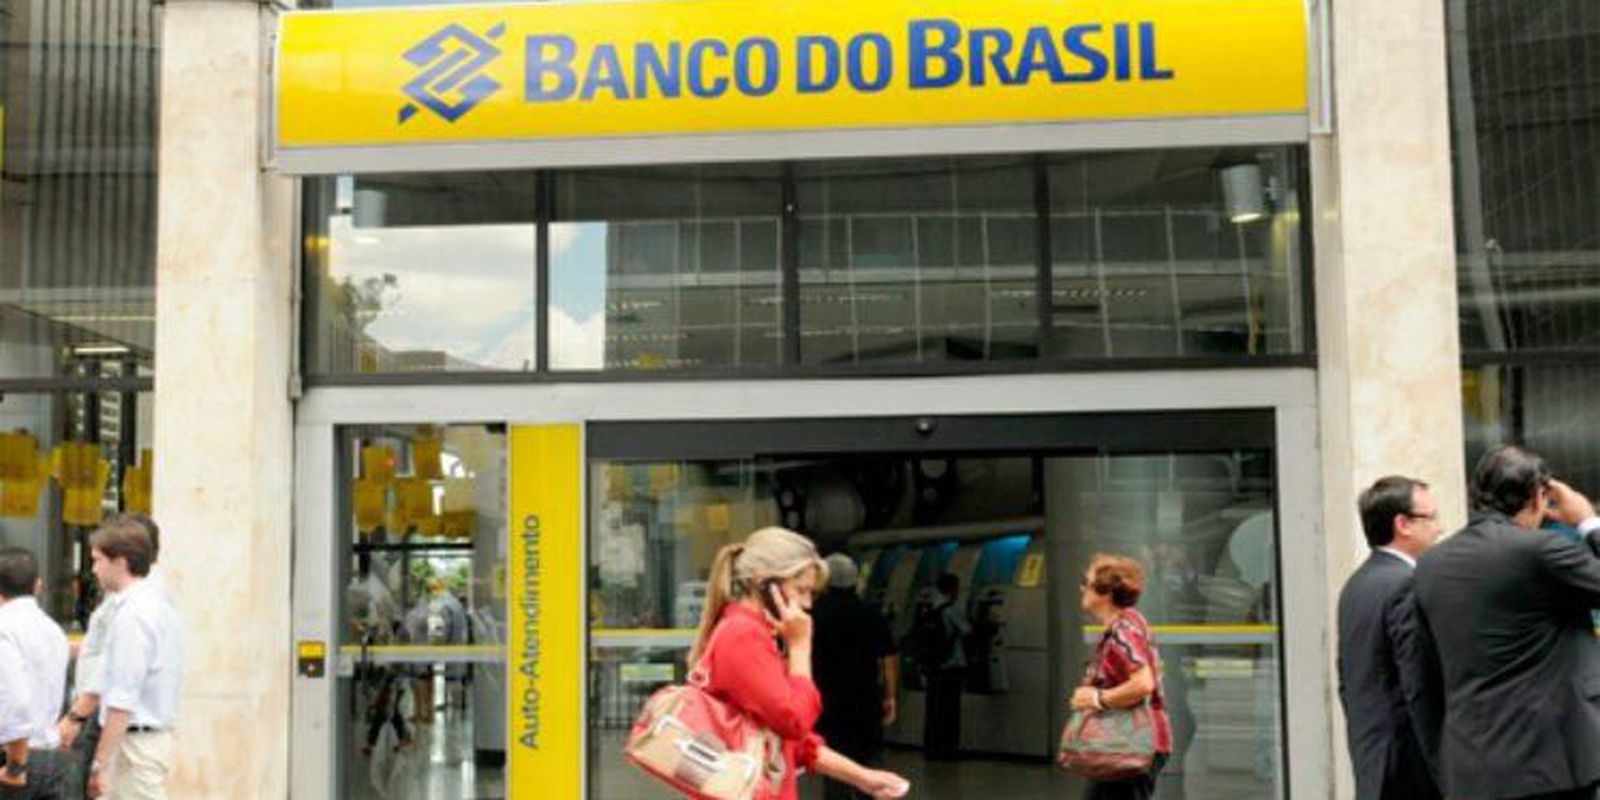 Banco do Brasil has record profit of BRL 31.8 billion in 2022